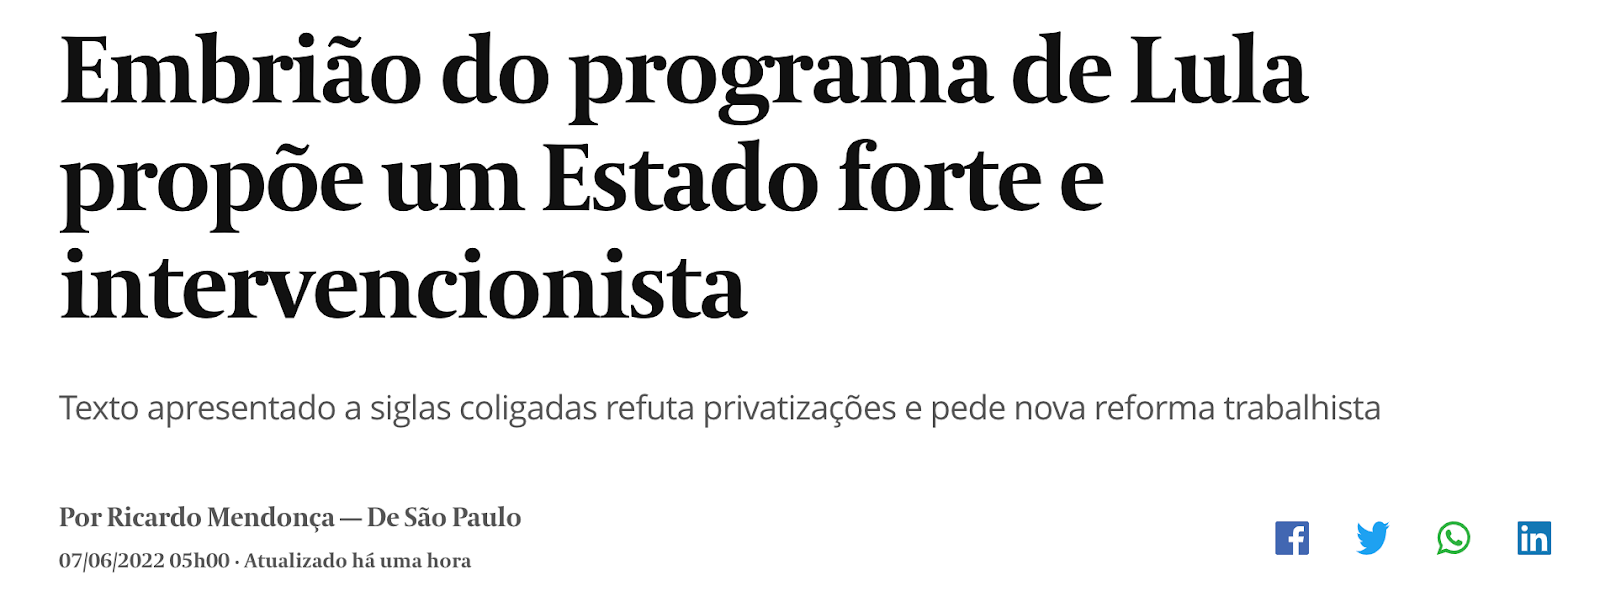 Manchete do Valor Econômico: "Embrião do programa de Lula propõe um Estado forte e intervencionista."